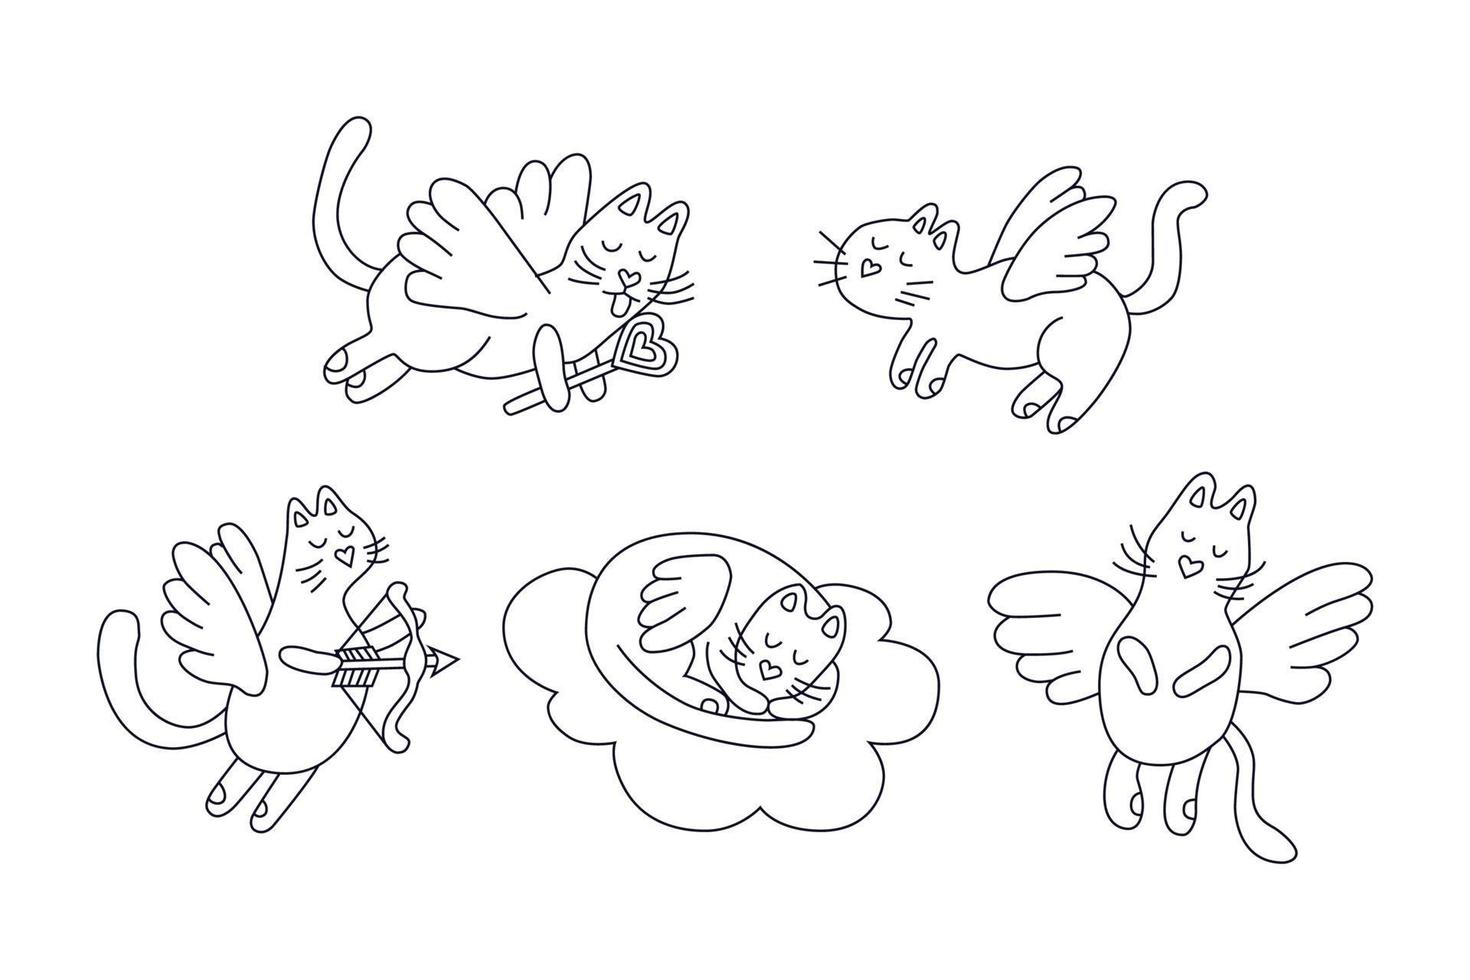 flygande katter. söt katt. symbol för kärlek. uppsättning vektorillustrationer i doodle stil för alla hjärtans dag eller bröllop på vit bakgrund vektor